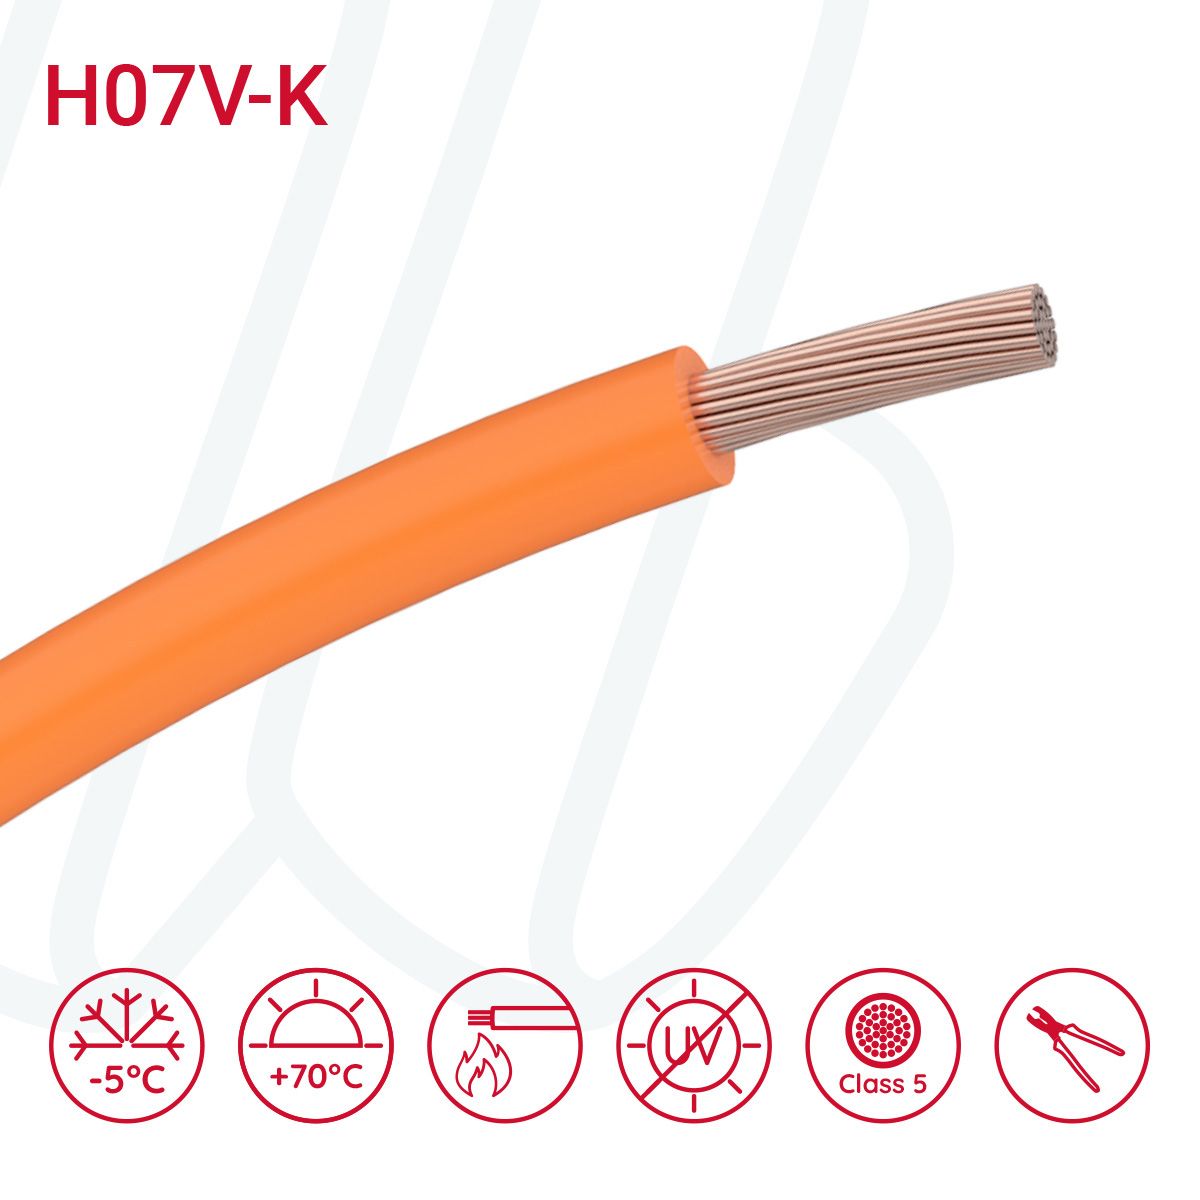 Провід монтажний гнучкий H07V-K 10 мм² помаранчевий, 01, 10